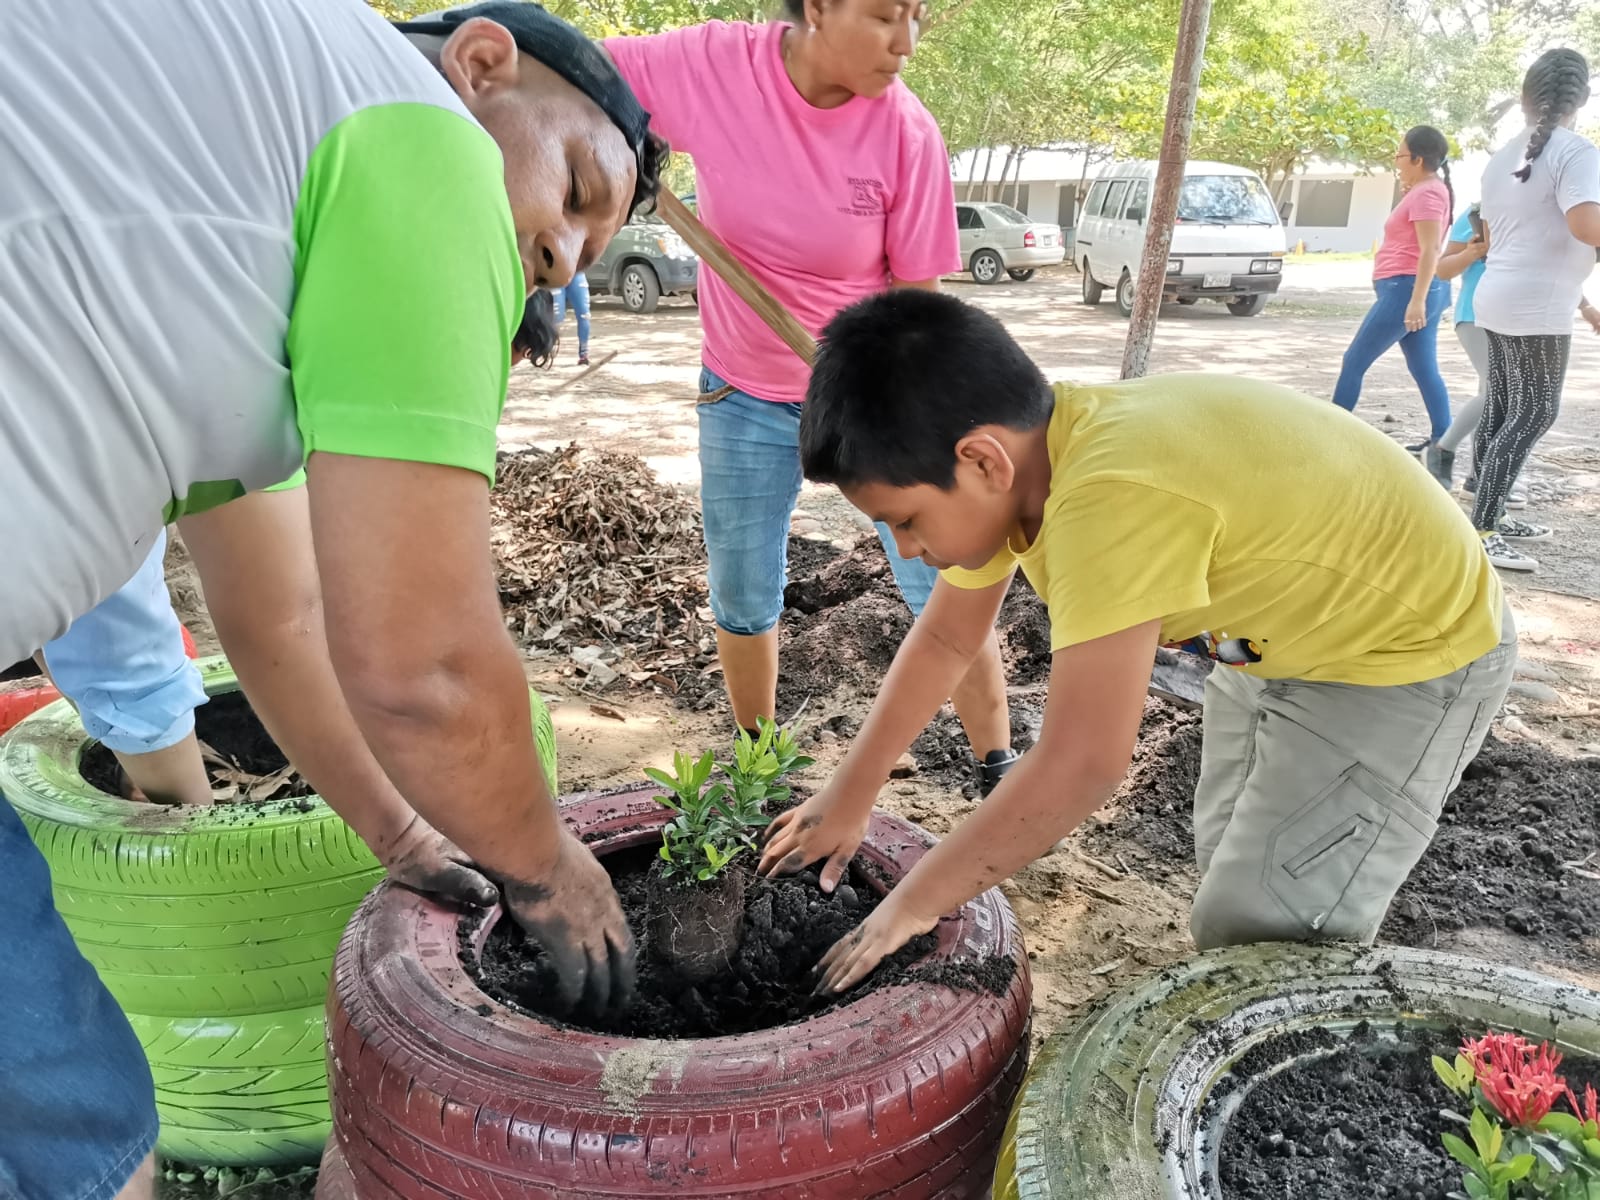 Futuros educadores ambientales celebran el Día del Reciclaje